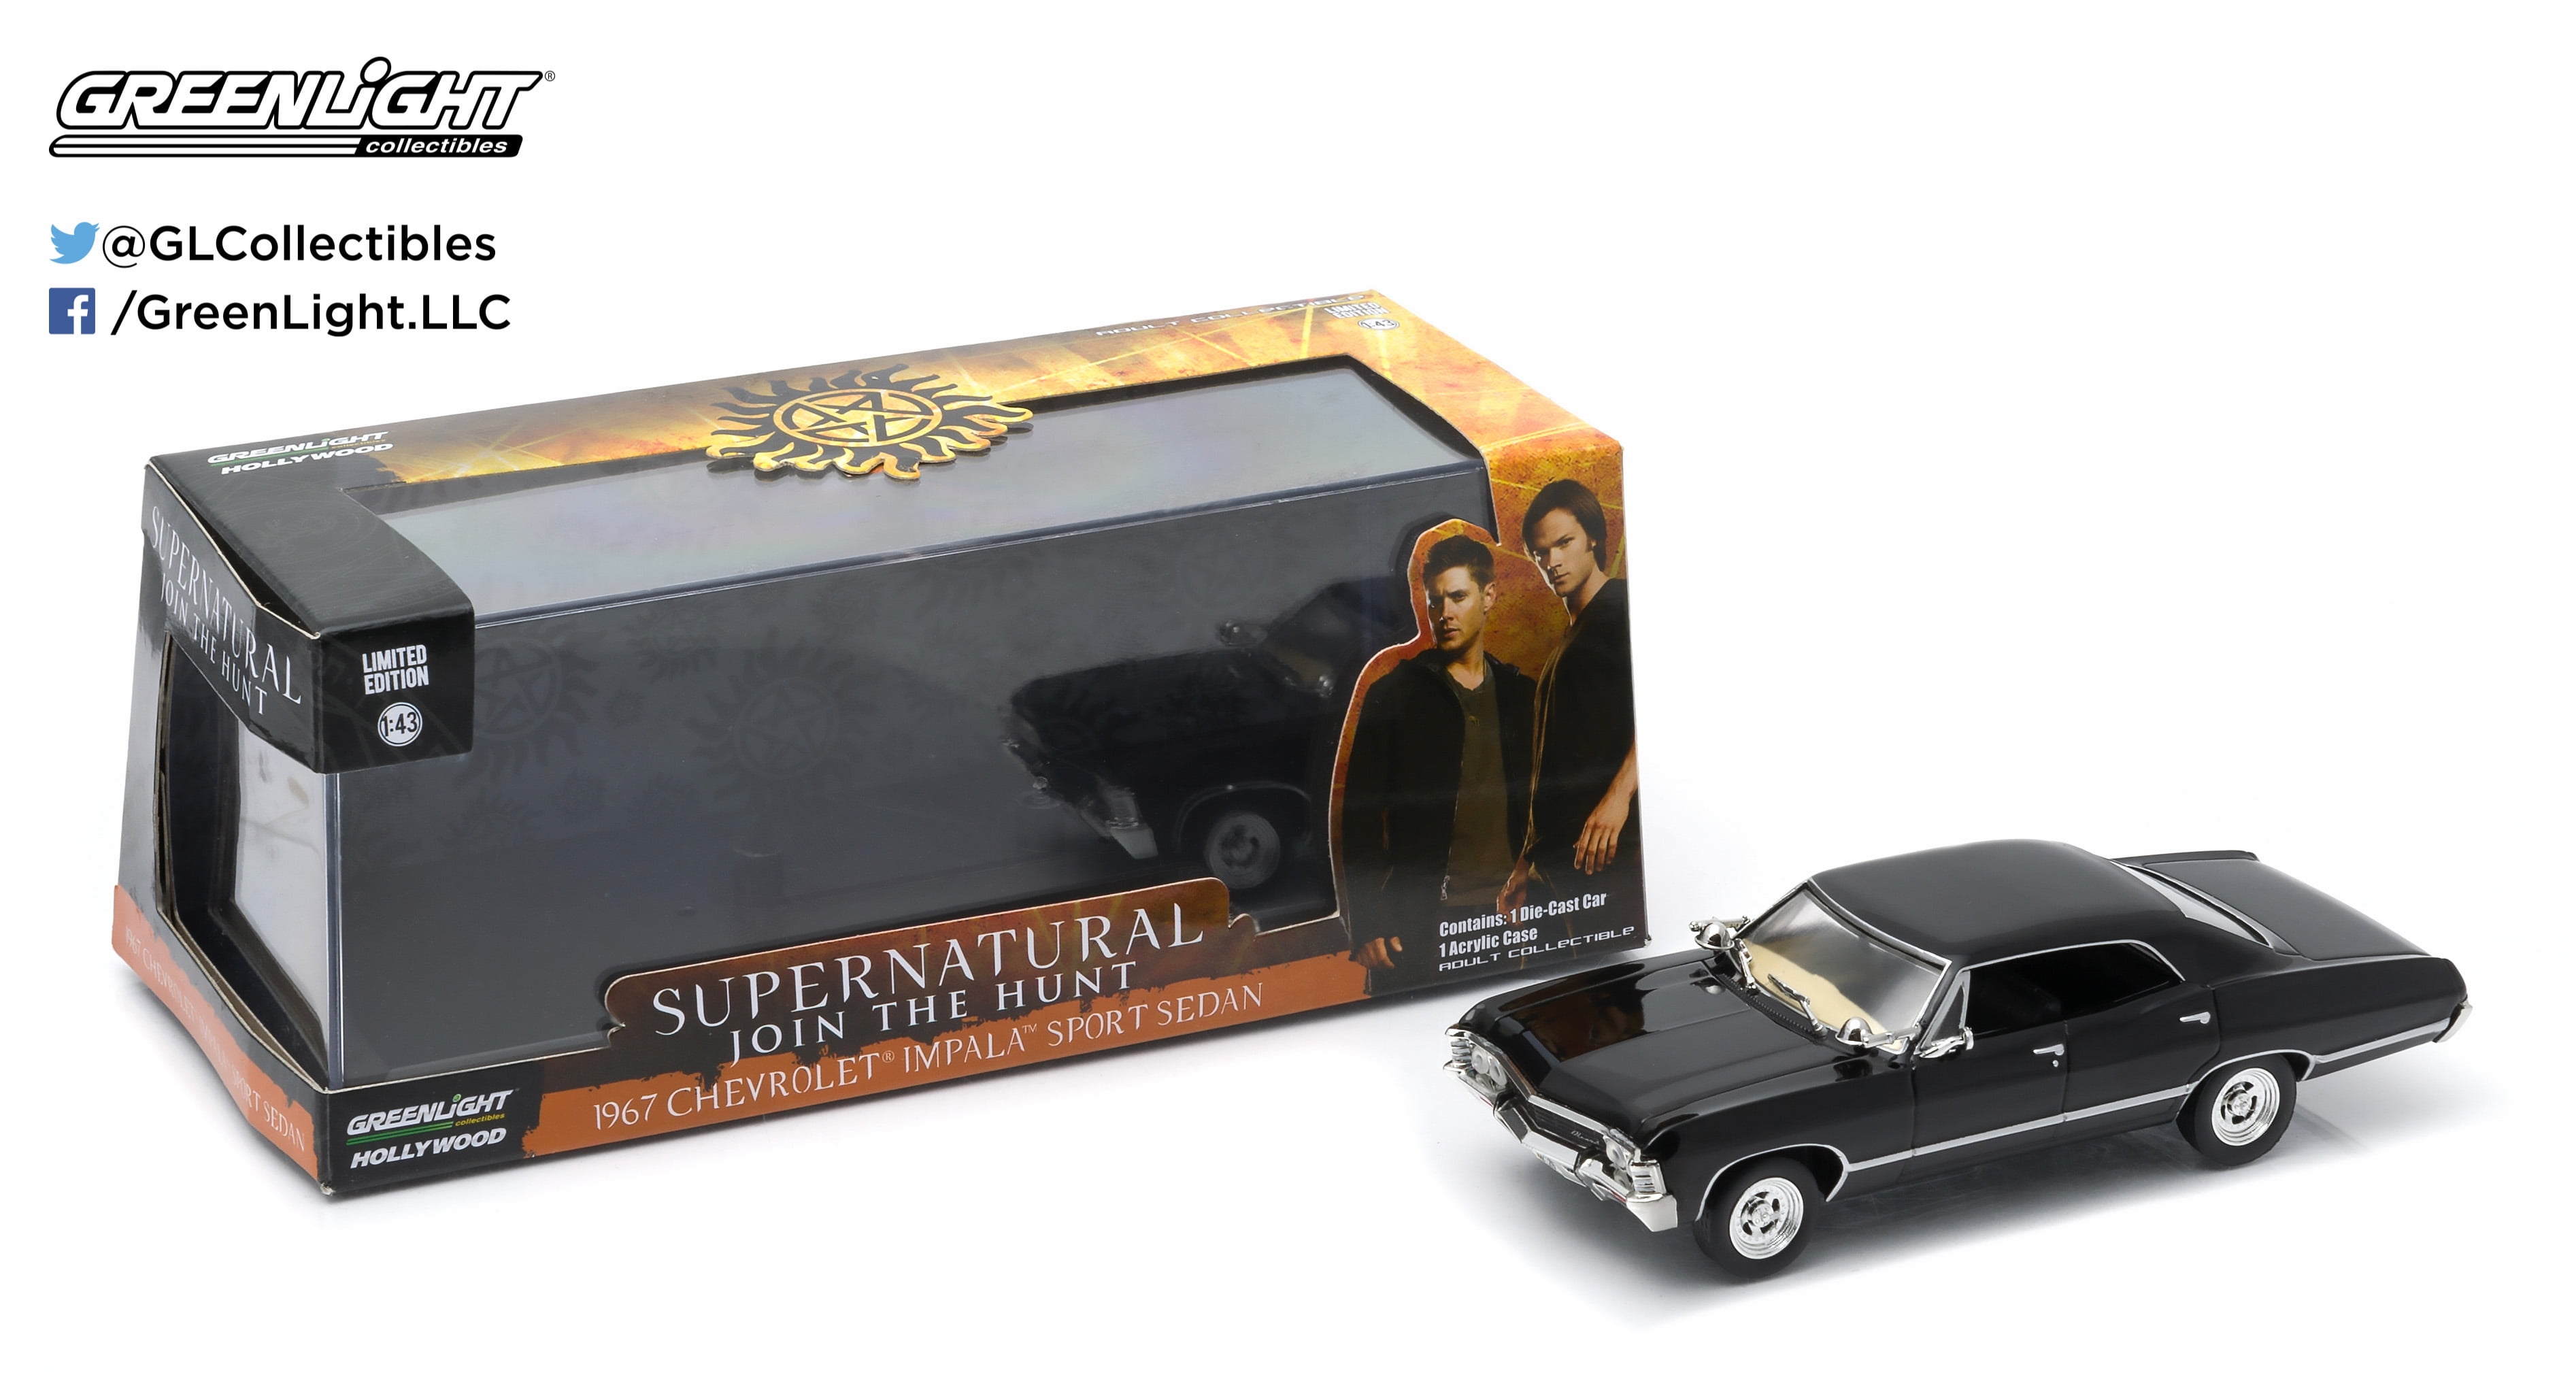 Greenlight Supernatural join the hunt 1967 chevrolet impala sport sedan 1/43